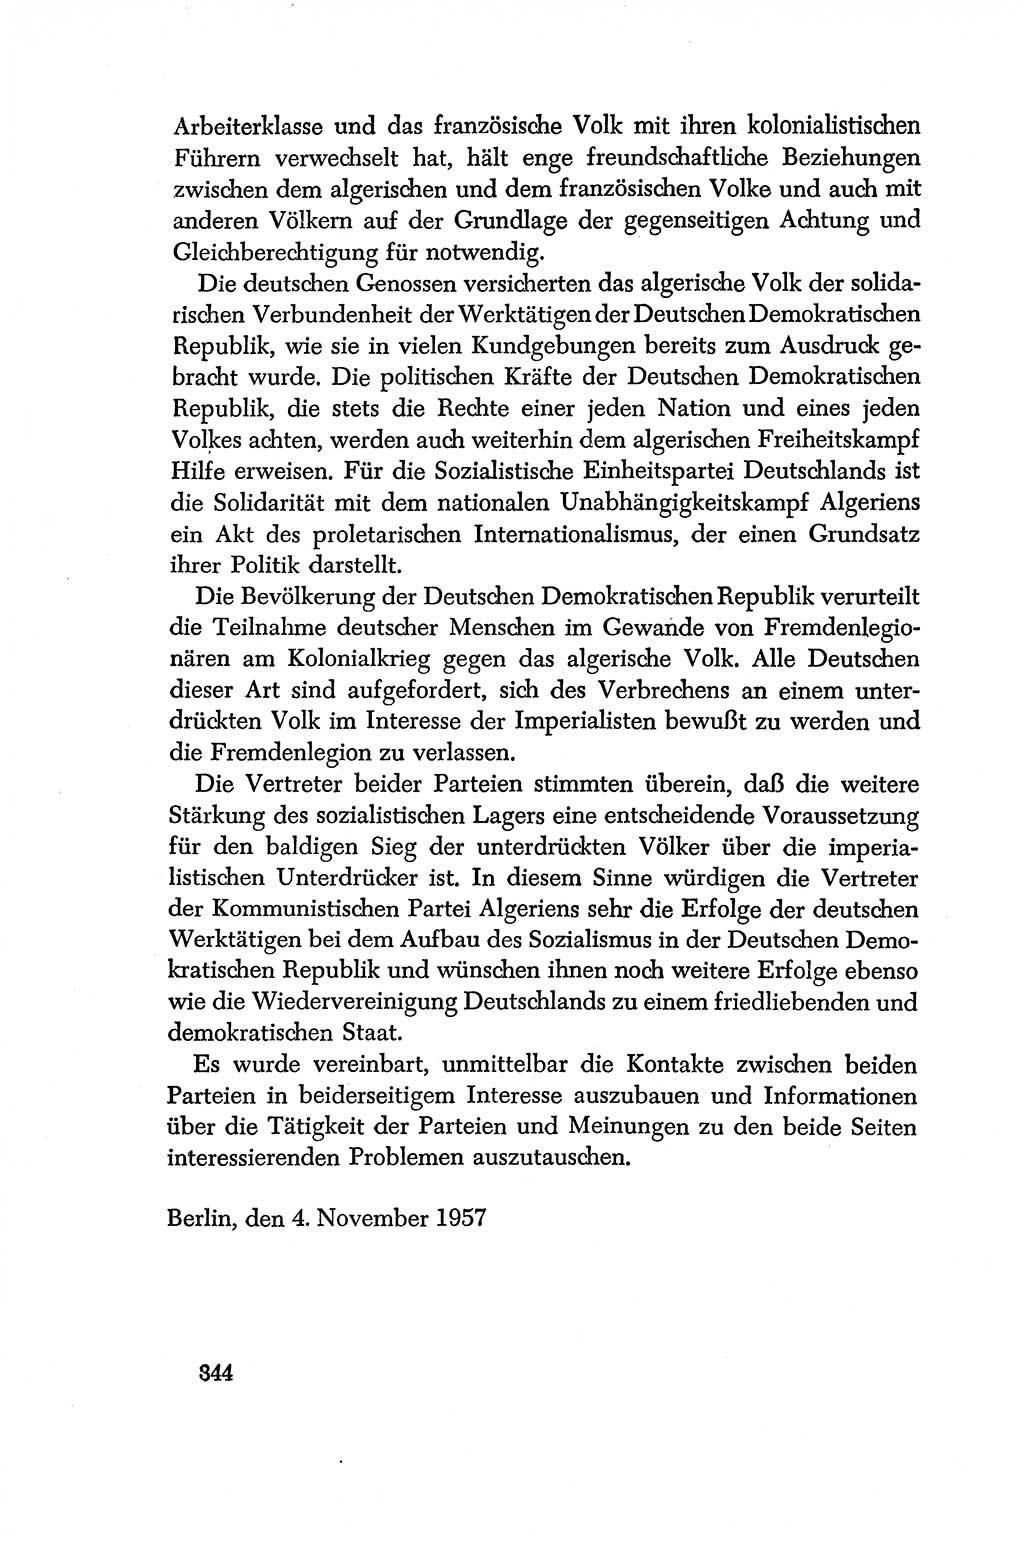 Dokumente der Sozialistischen Einheitspartei Deutschlands (SED) [Deutsche Demokratische Republik (DDR)] 1956-1957, Seite 344 (Dok. SED DDR 1956-1957, S. 344)